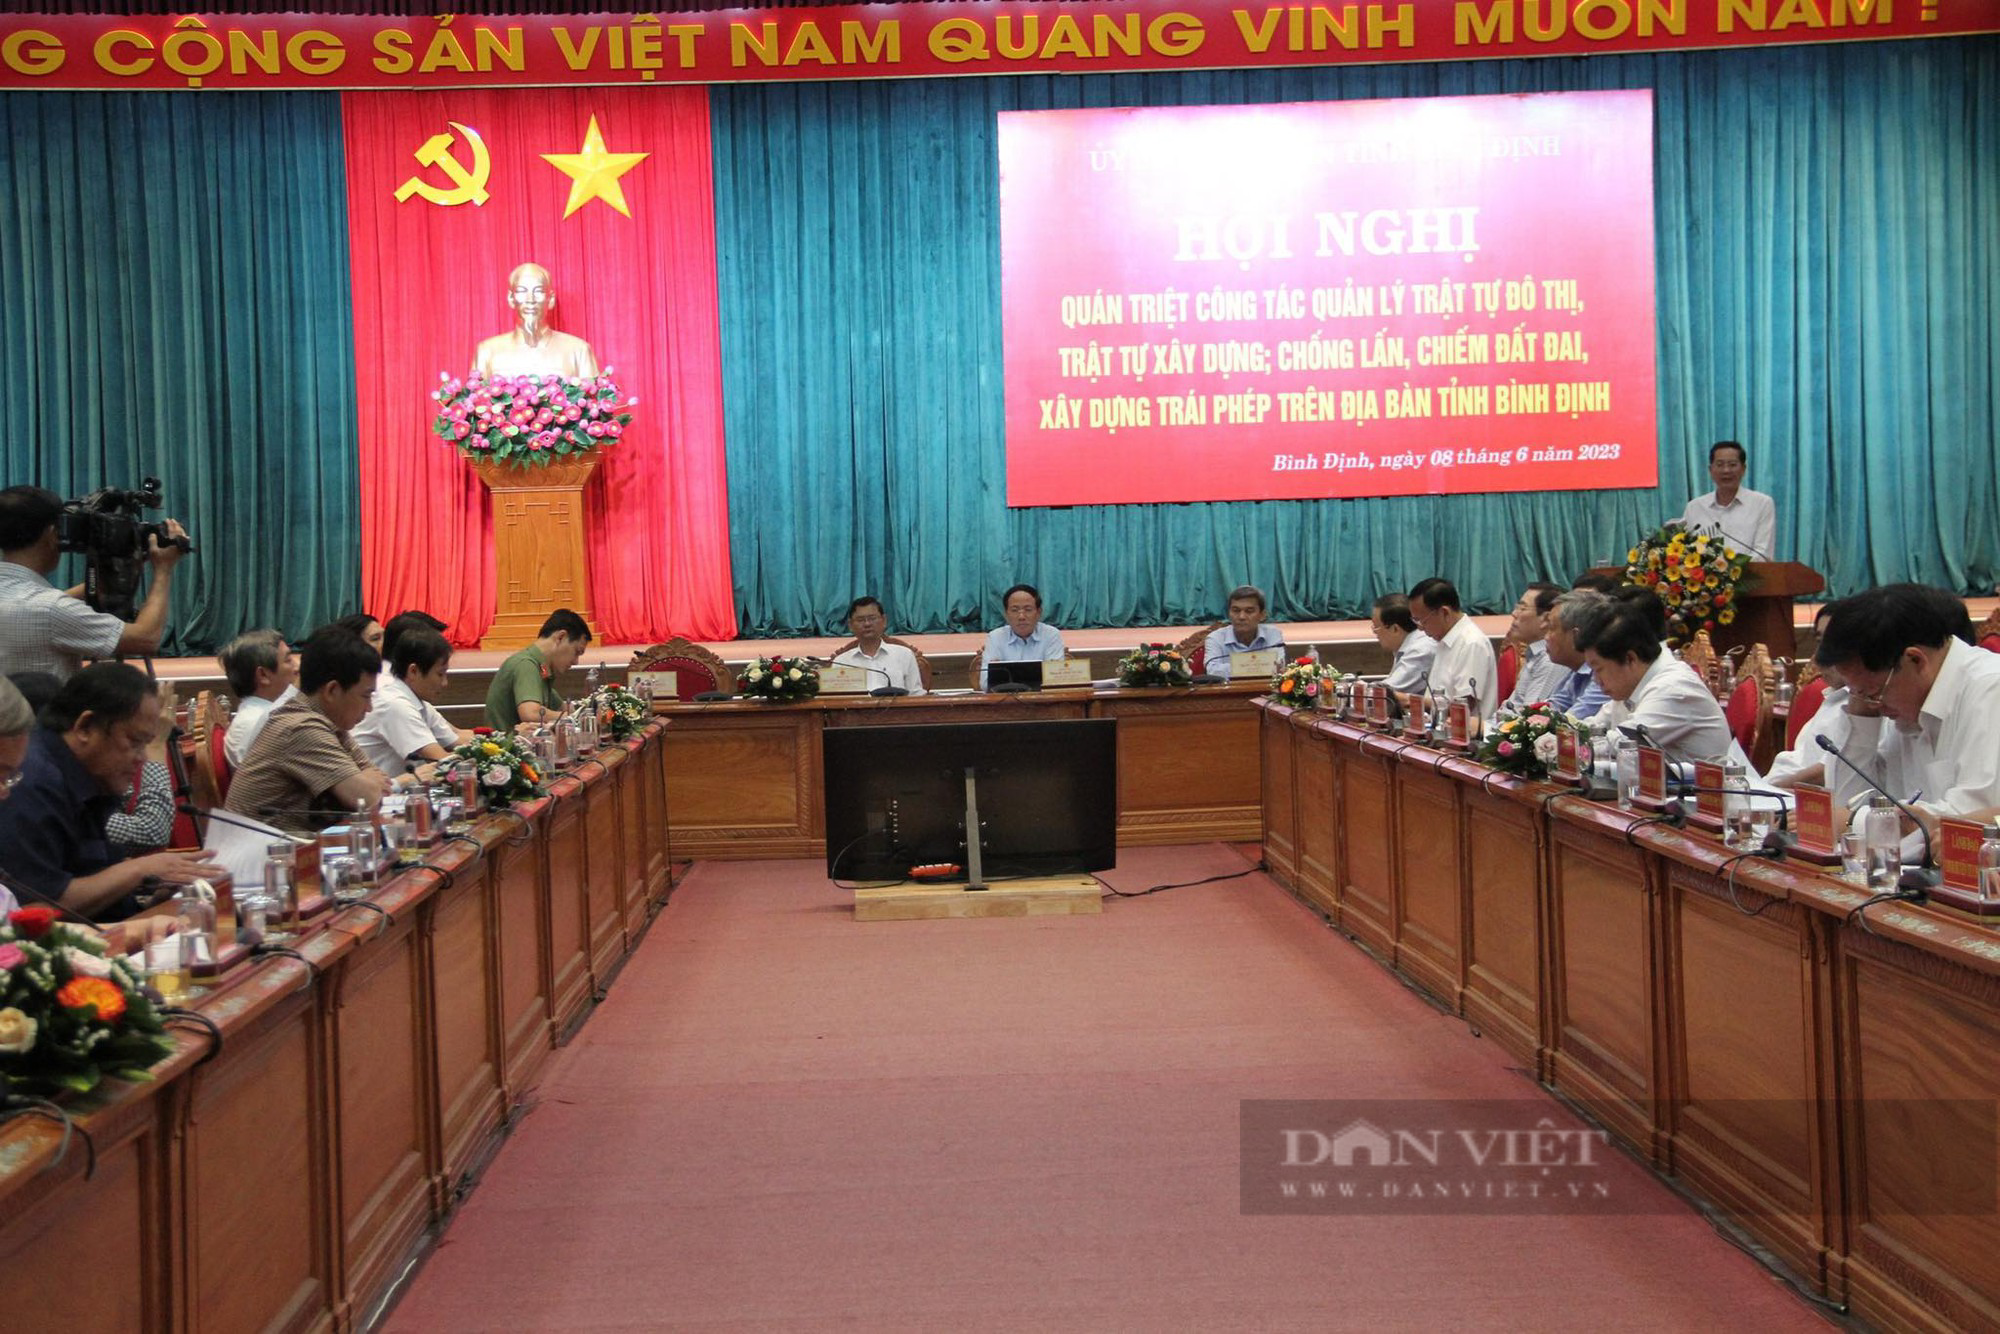 Chủ tịch Bình Định: 'Tôi vừa sửa nhà thuê ở Quy Nhơn, đã có người Đội trật tự đến hỏi' - Ảnh 3.